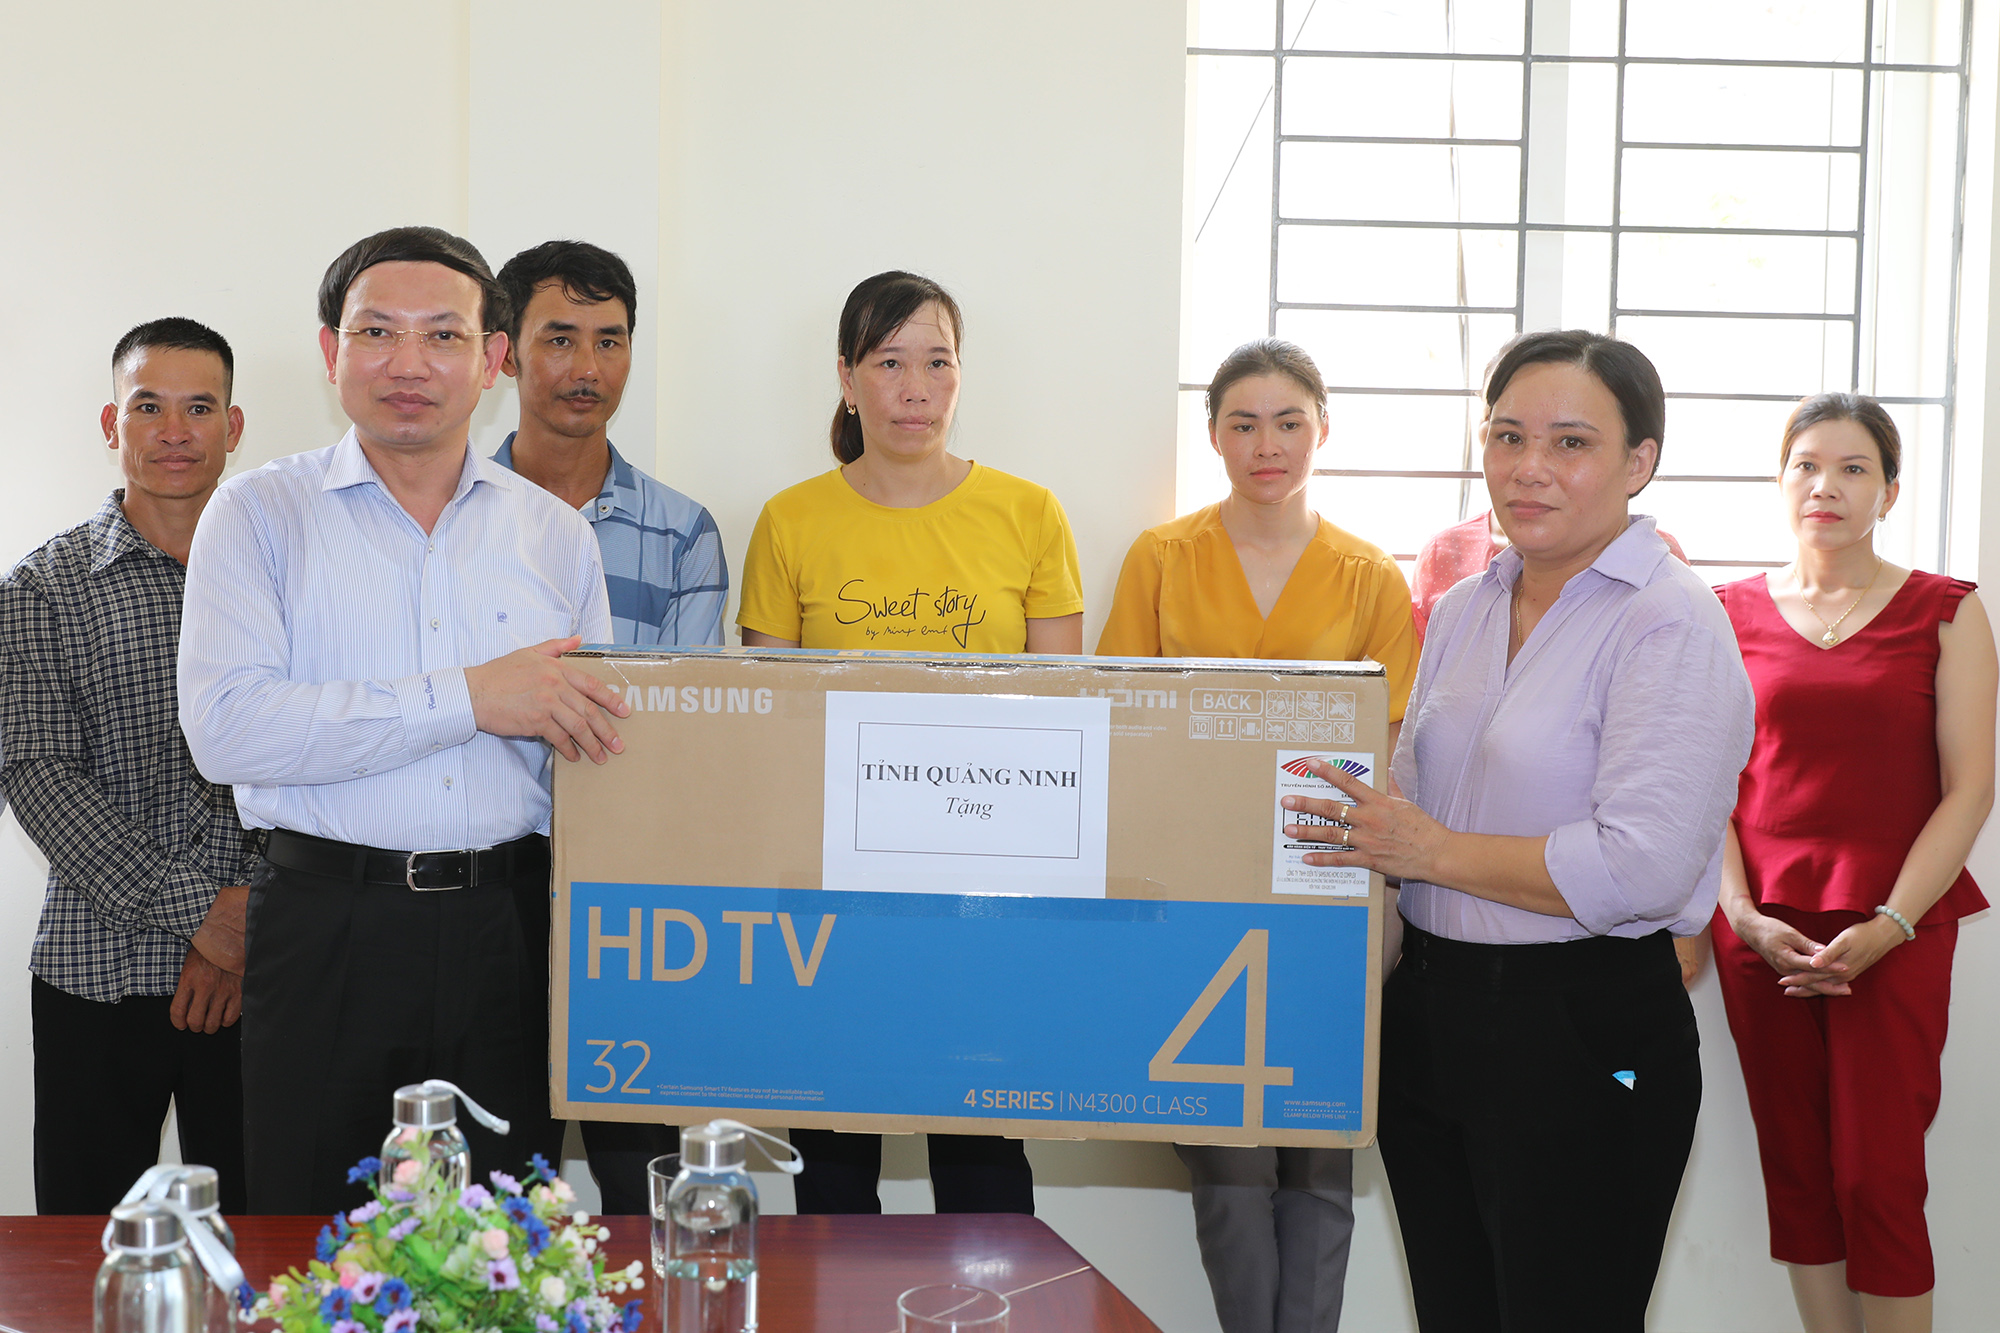 Đồng chí Nguyễn Xuân Ký, Bí thư Tỉnh ủy, tặng ti vi và thiết bị thu sóng cho người dân trên đảo.